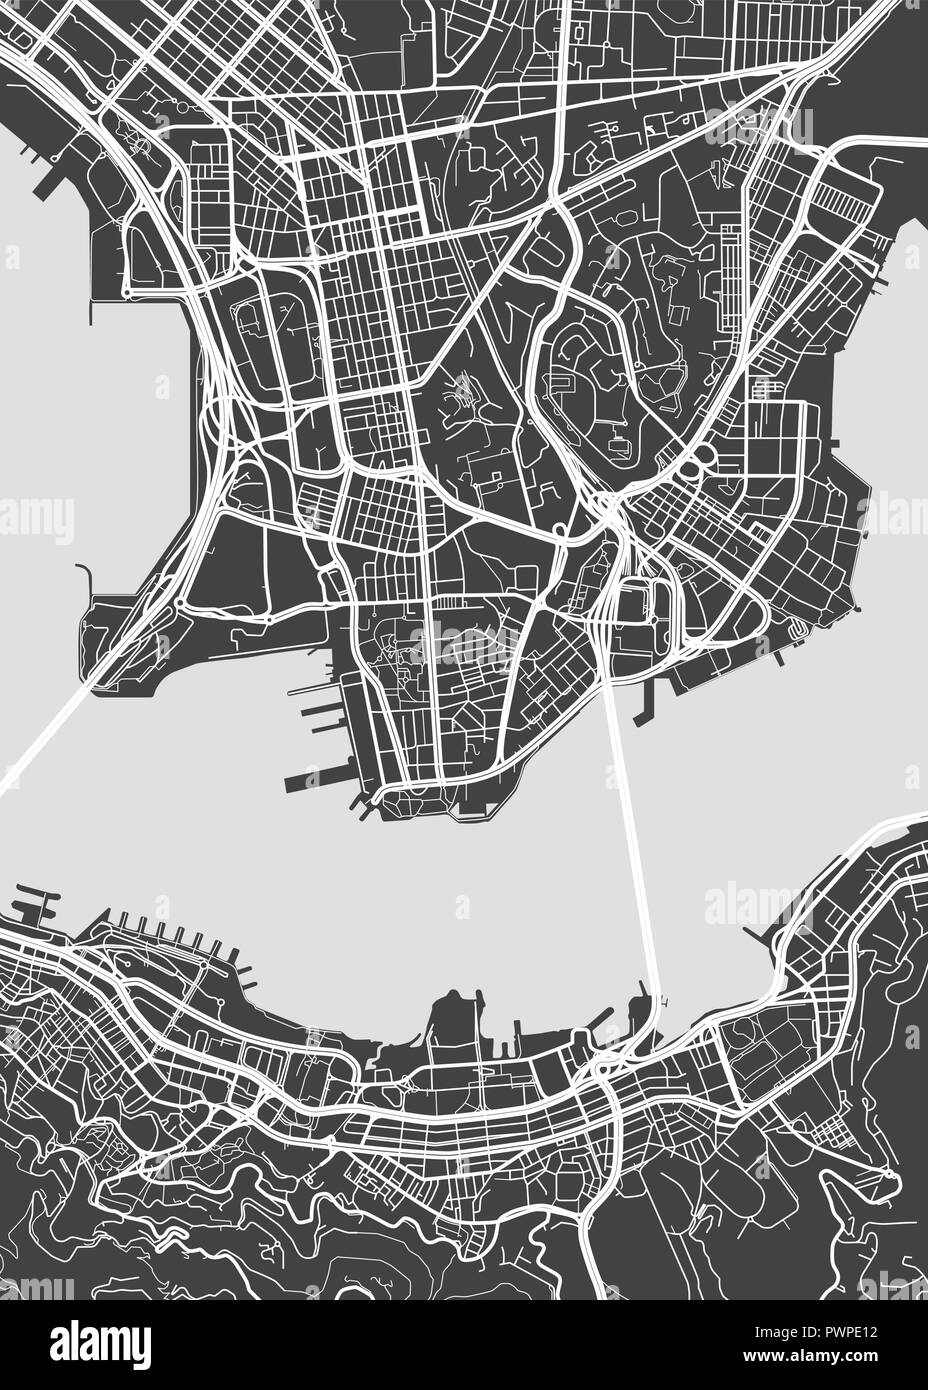 Carte détaillée du vecteur Hong Kong plan détaillé de la ville, les rivières et les rues Illustration de Vecteur